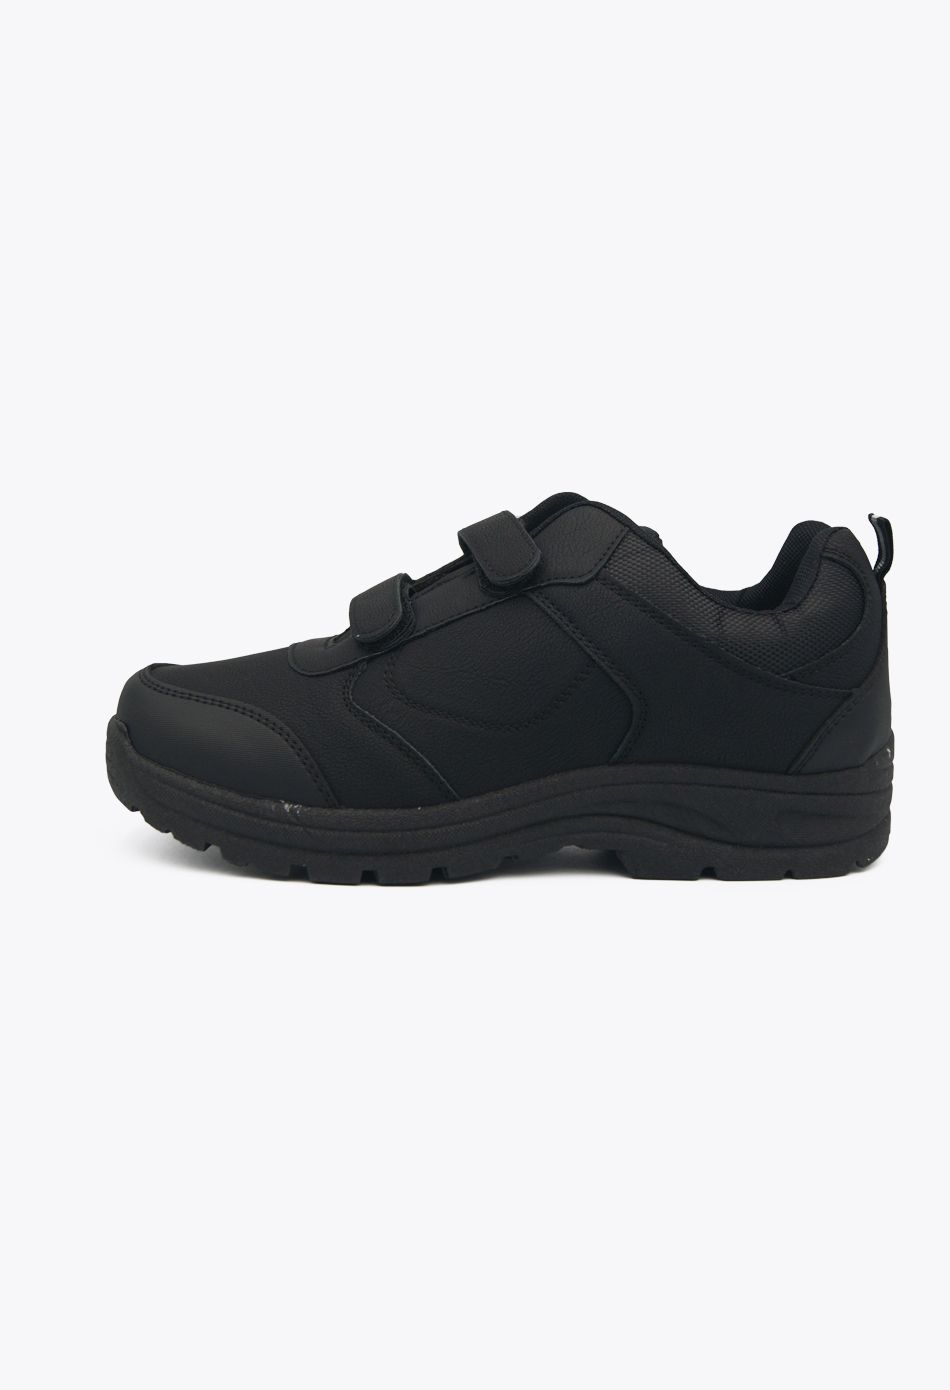 Ανδρικά Αθλητικά Παπούτσια για Τρέξιμο με Scratch Μαύρο / C8208-black ΑΘΛΗΤΙΚΑ & SNEAKERS joya.gr